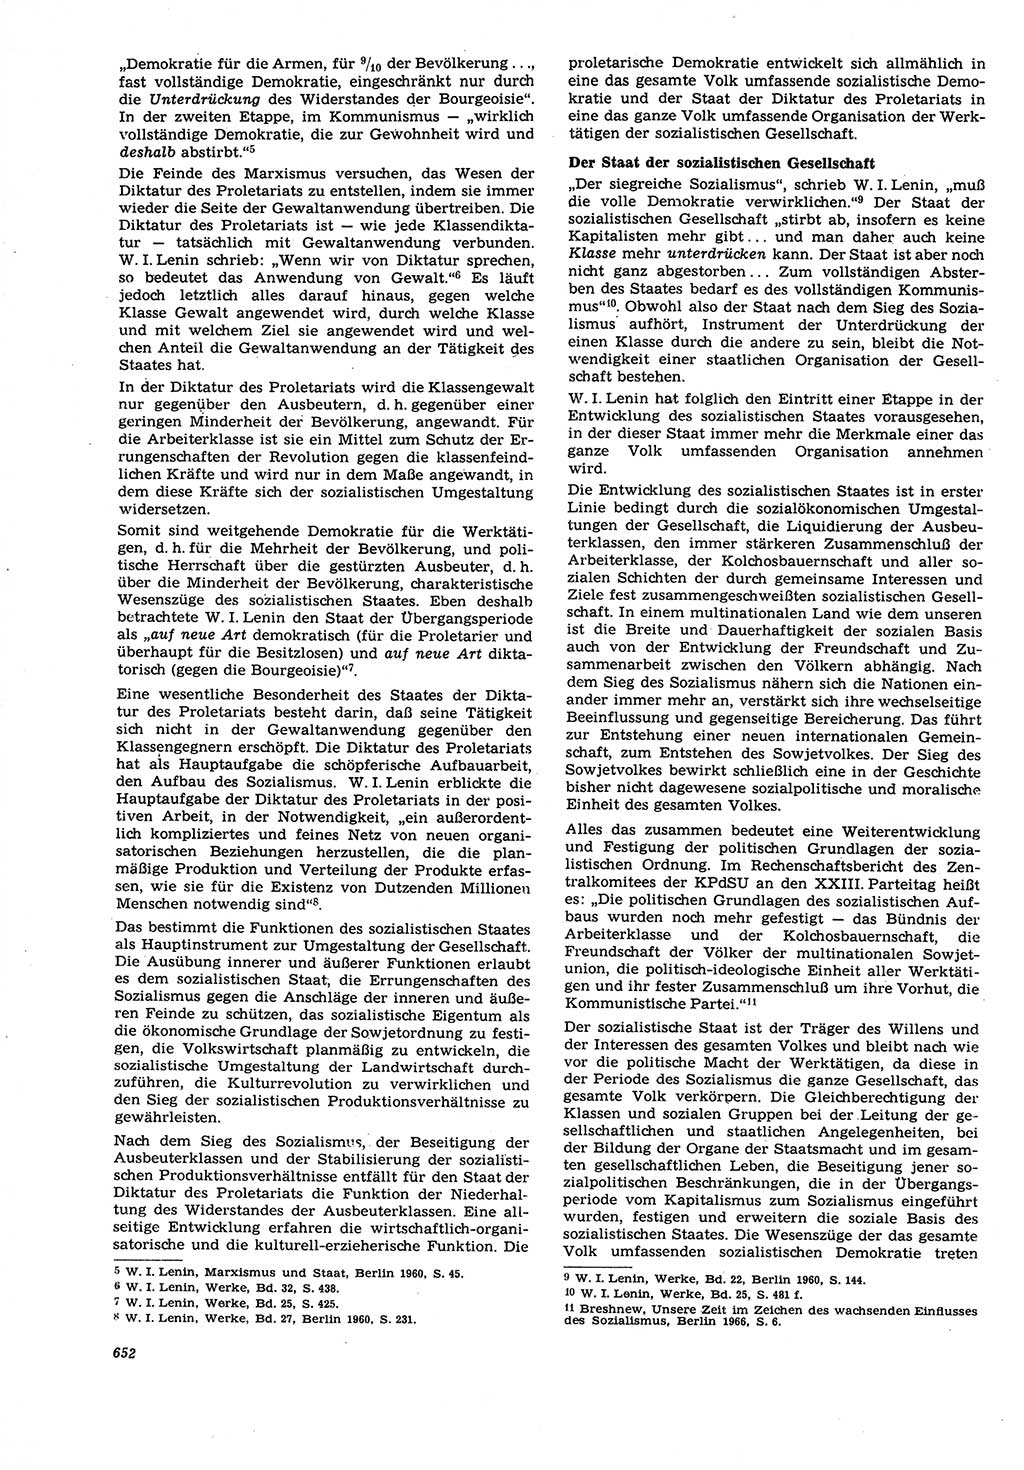 Neue Justiz (NJ), Zeitschrift für Recht und Rechtswissenschaft [Deutsche Demokratische Republik (DDR)], 21. Jahrgang 1967, Seite 652 (NJ DDR 1967, S. 652)